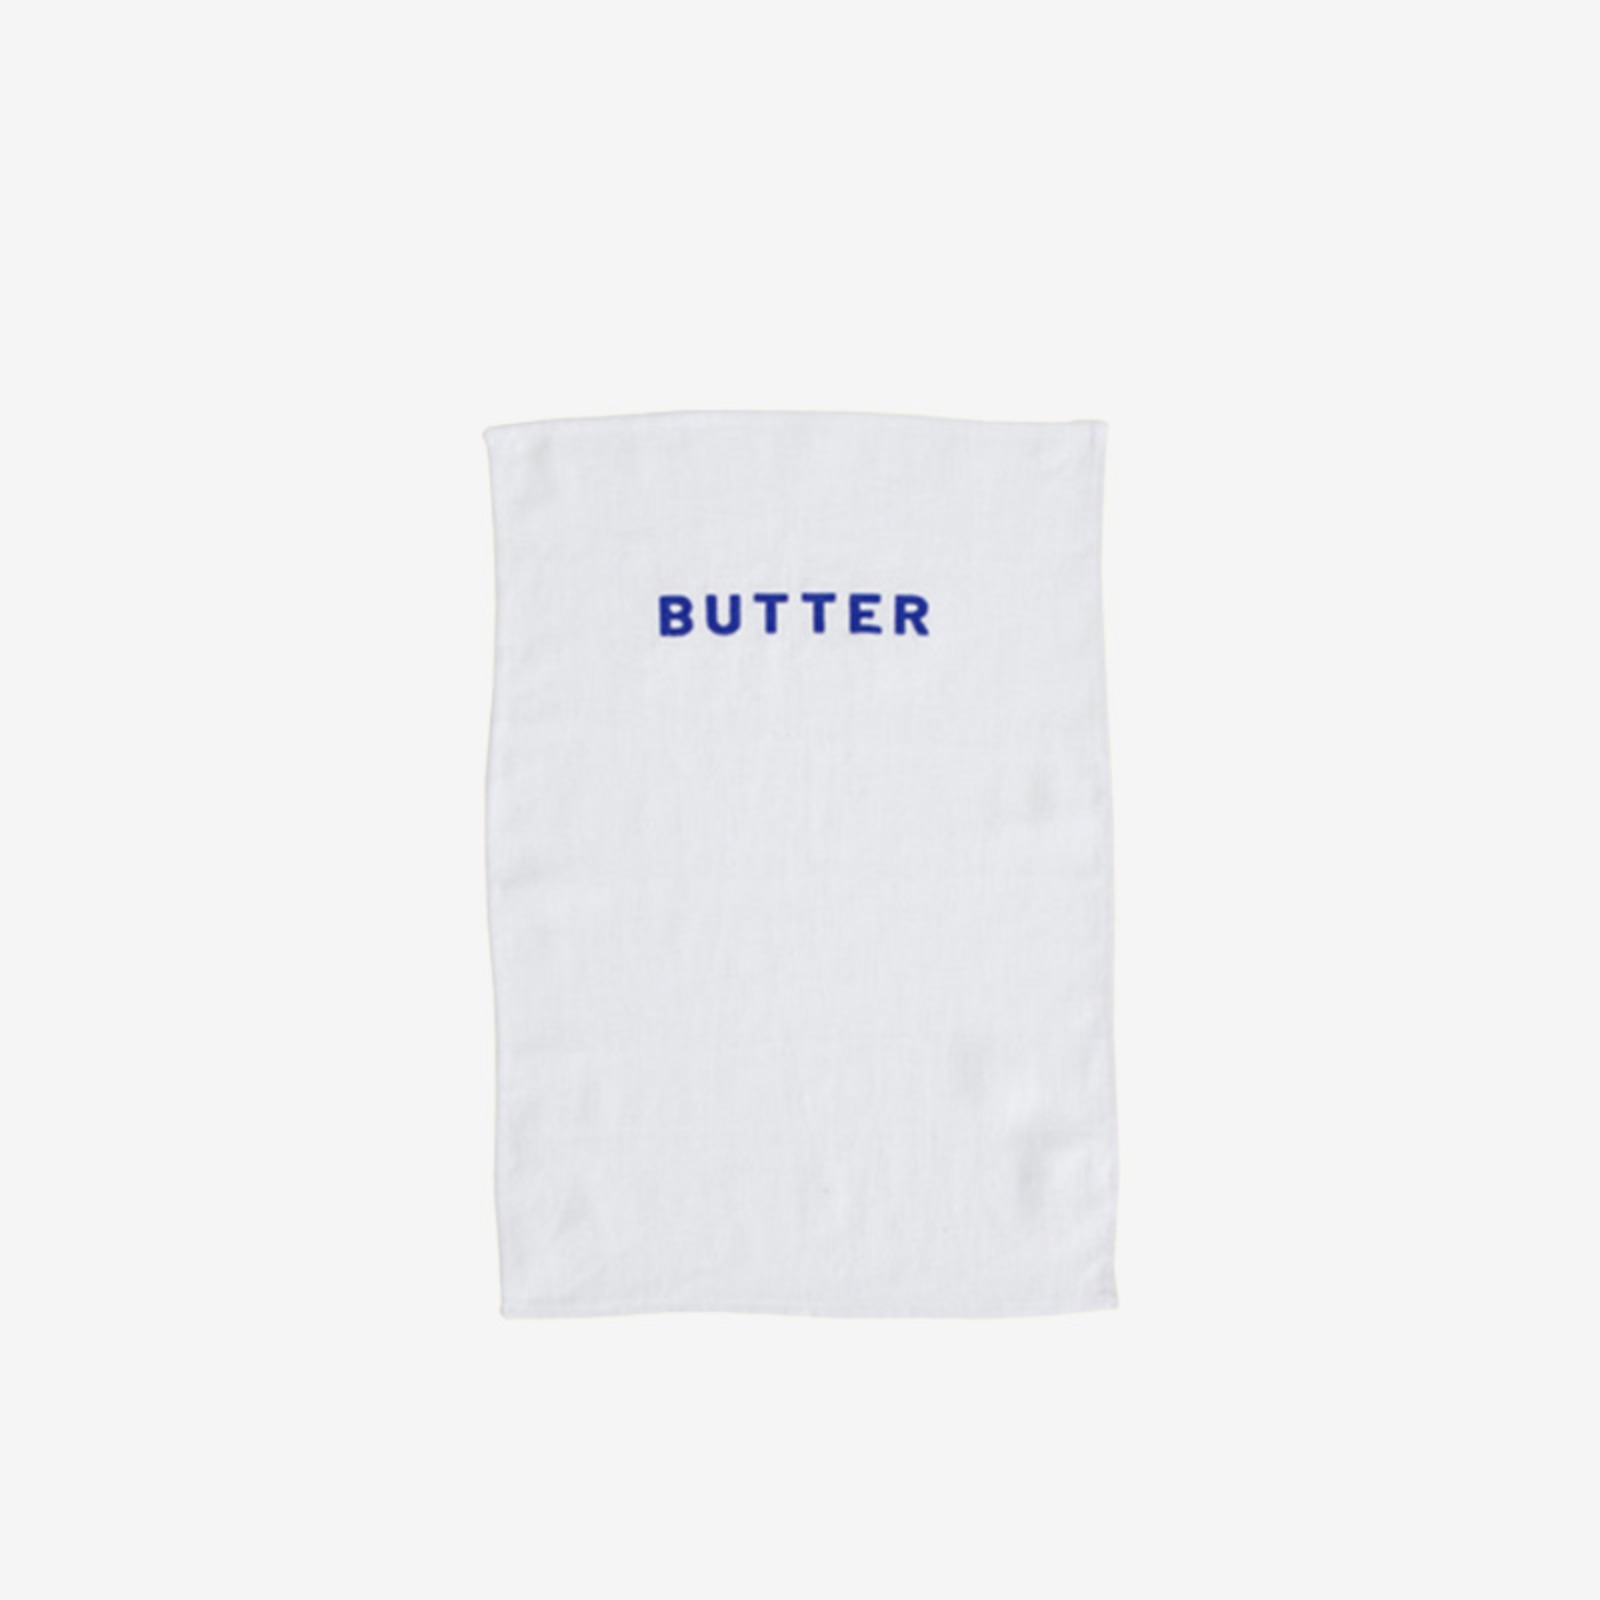 챕터원,[Spring fabric collection, 10%] 냅킨/테이블매트 - 버터